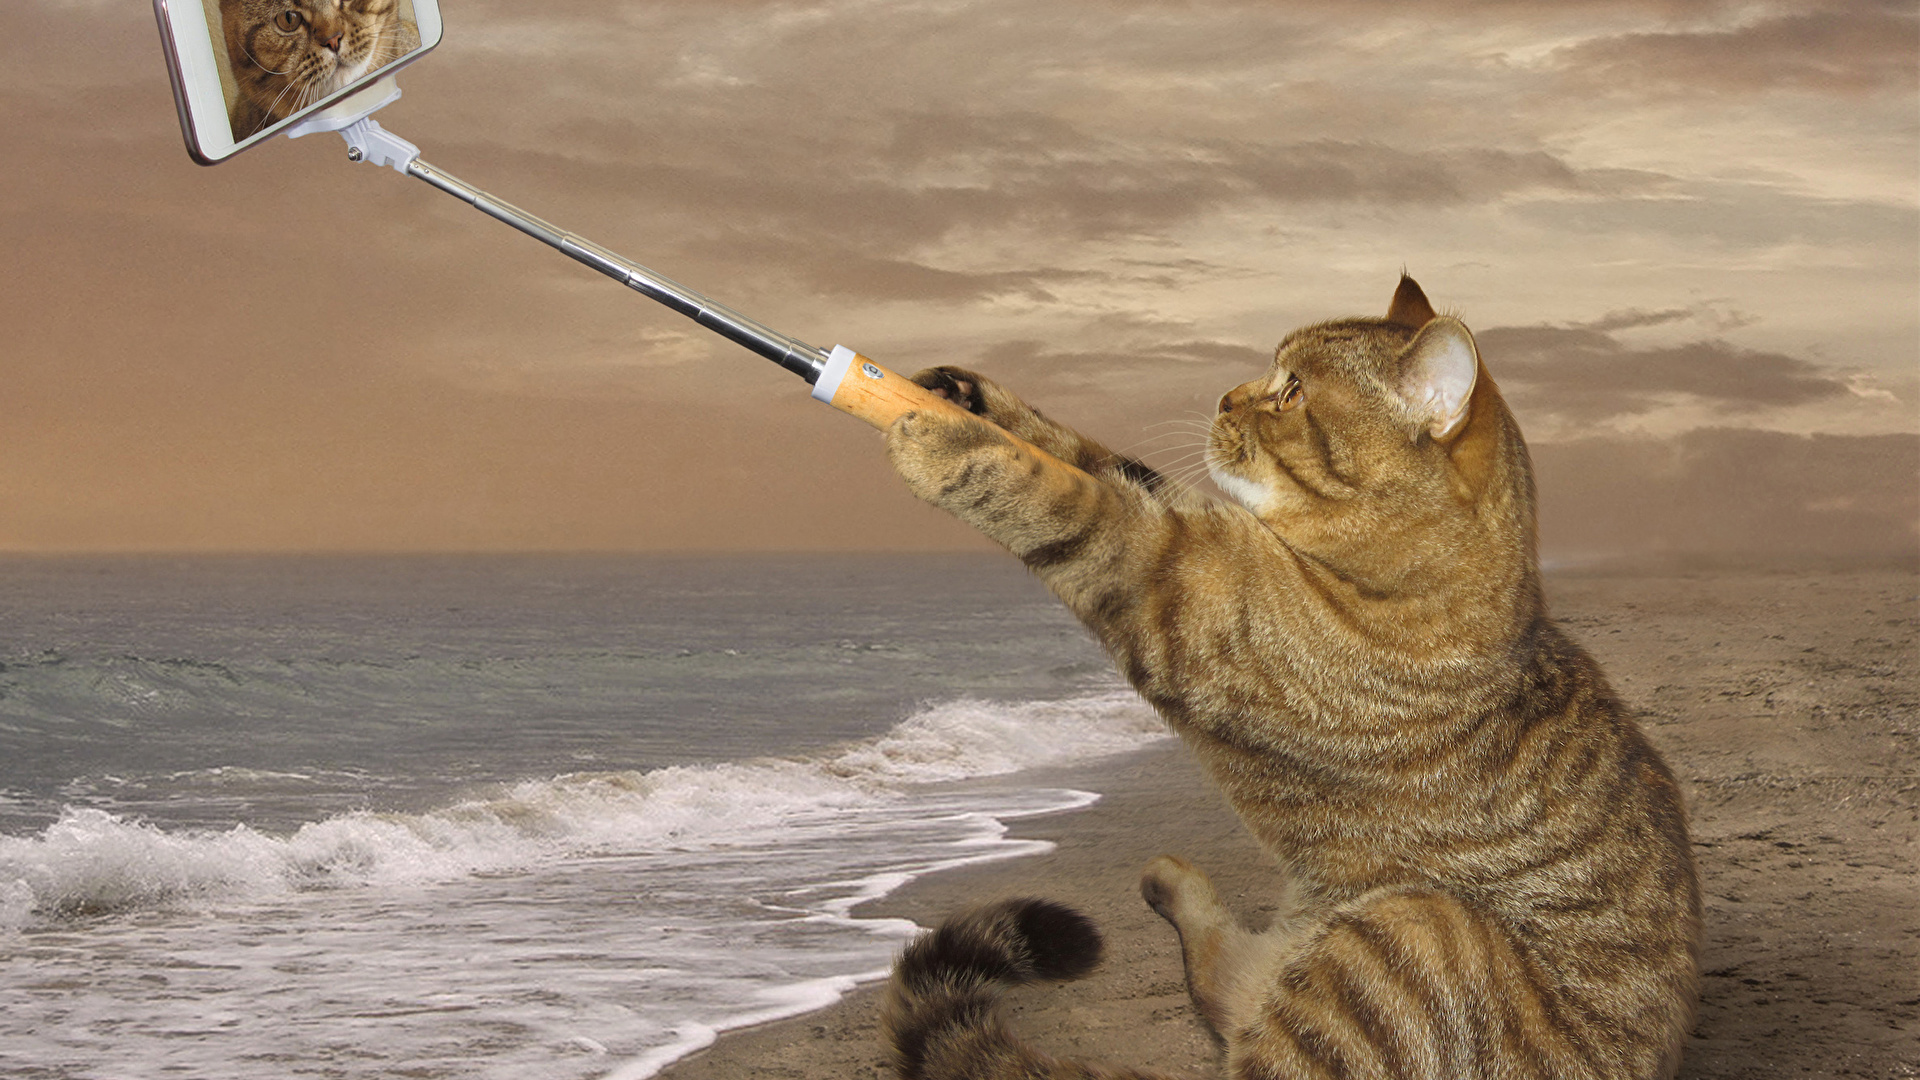 夏の海と猫 写真素材 [ 3270450 ] - フォトライブラリー photolibrary